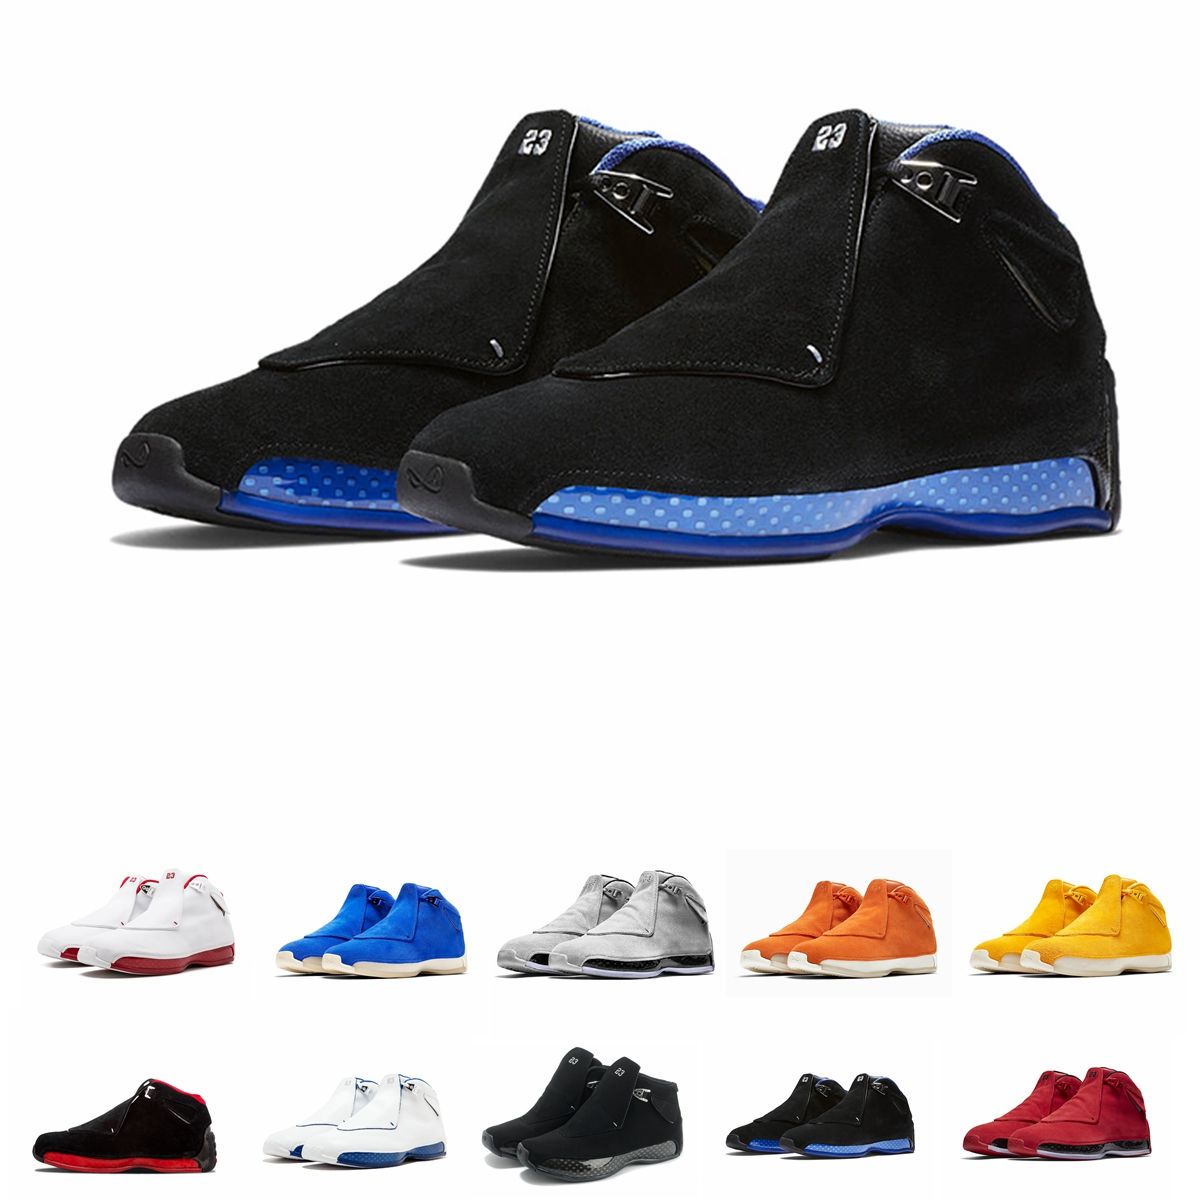 Nike Air Jordan Los más nuevos zapatos de gamuza azul amarillo naranja 18s de definición